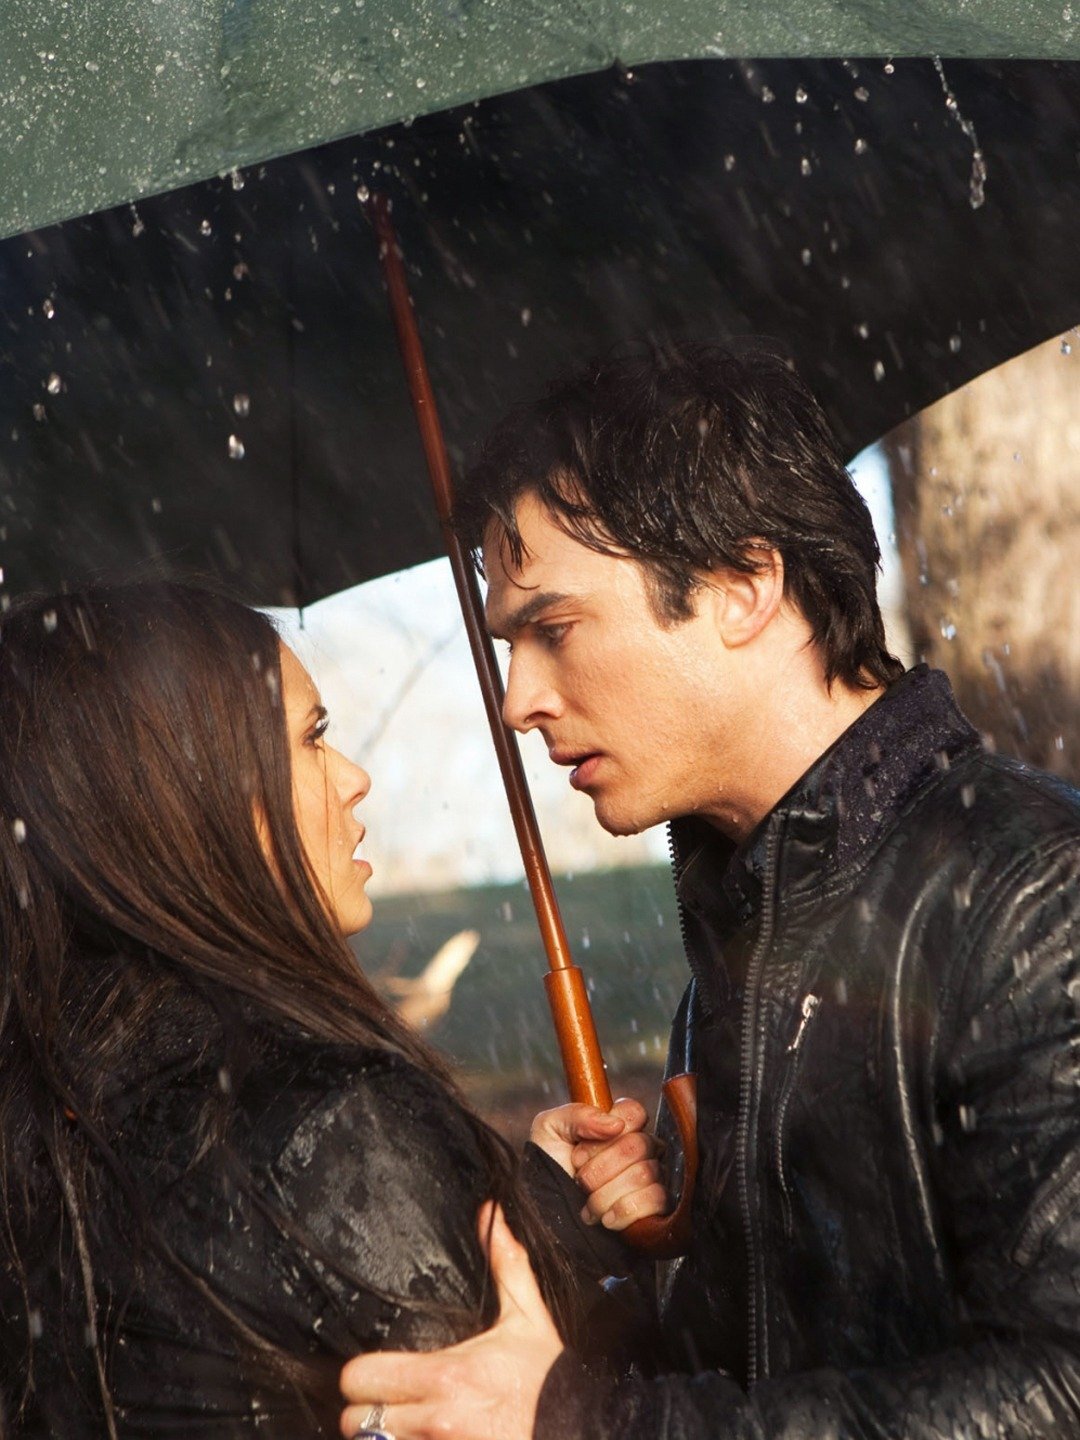 Har Elena och Damon dating i verkliga livet